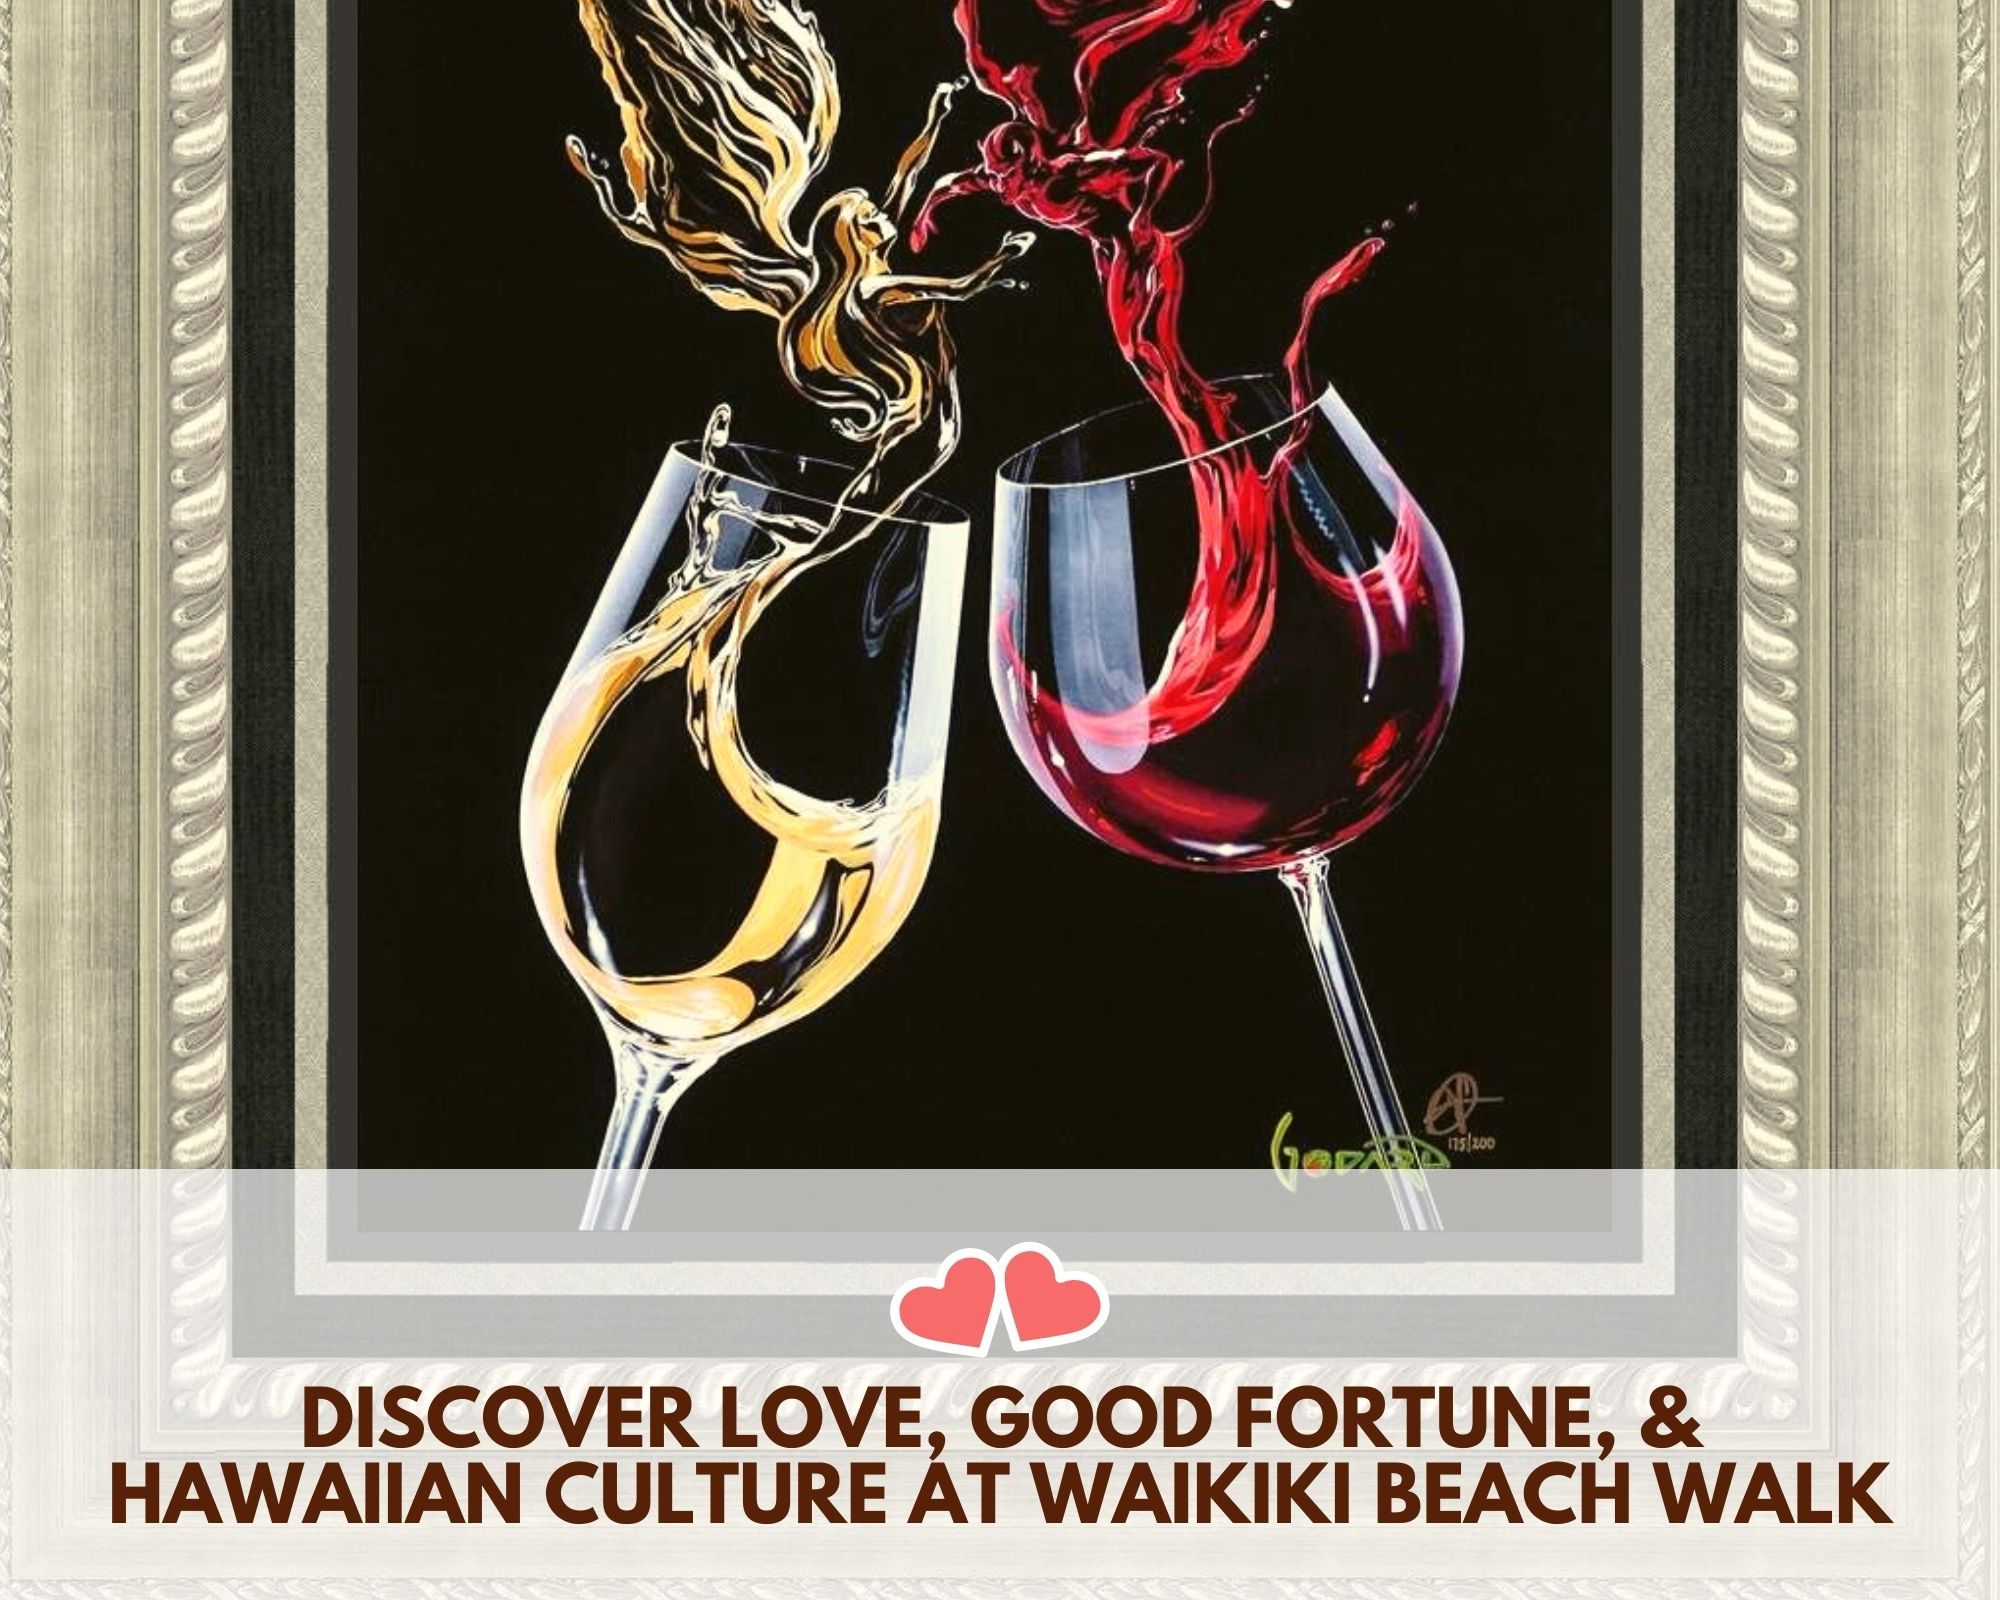 Discover Love, Good Fortune, & Hawaiian Culture at Waikiki Beach Walk